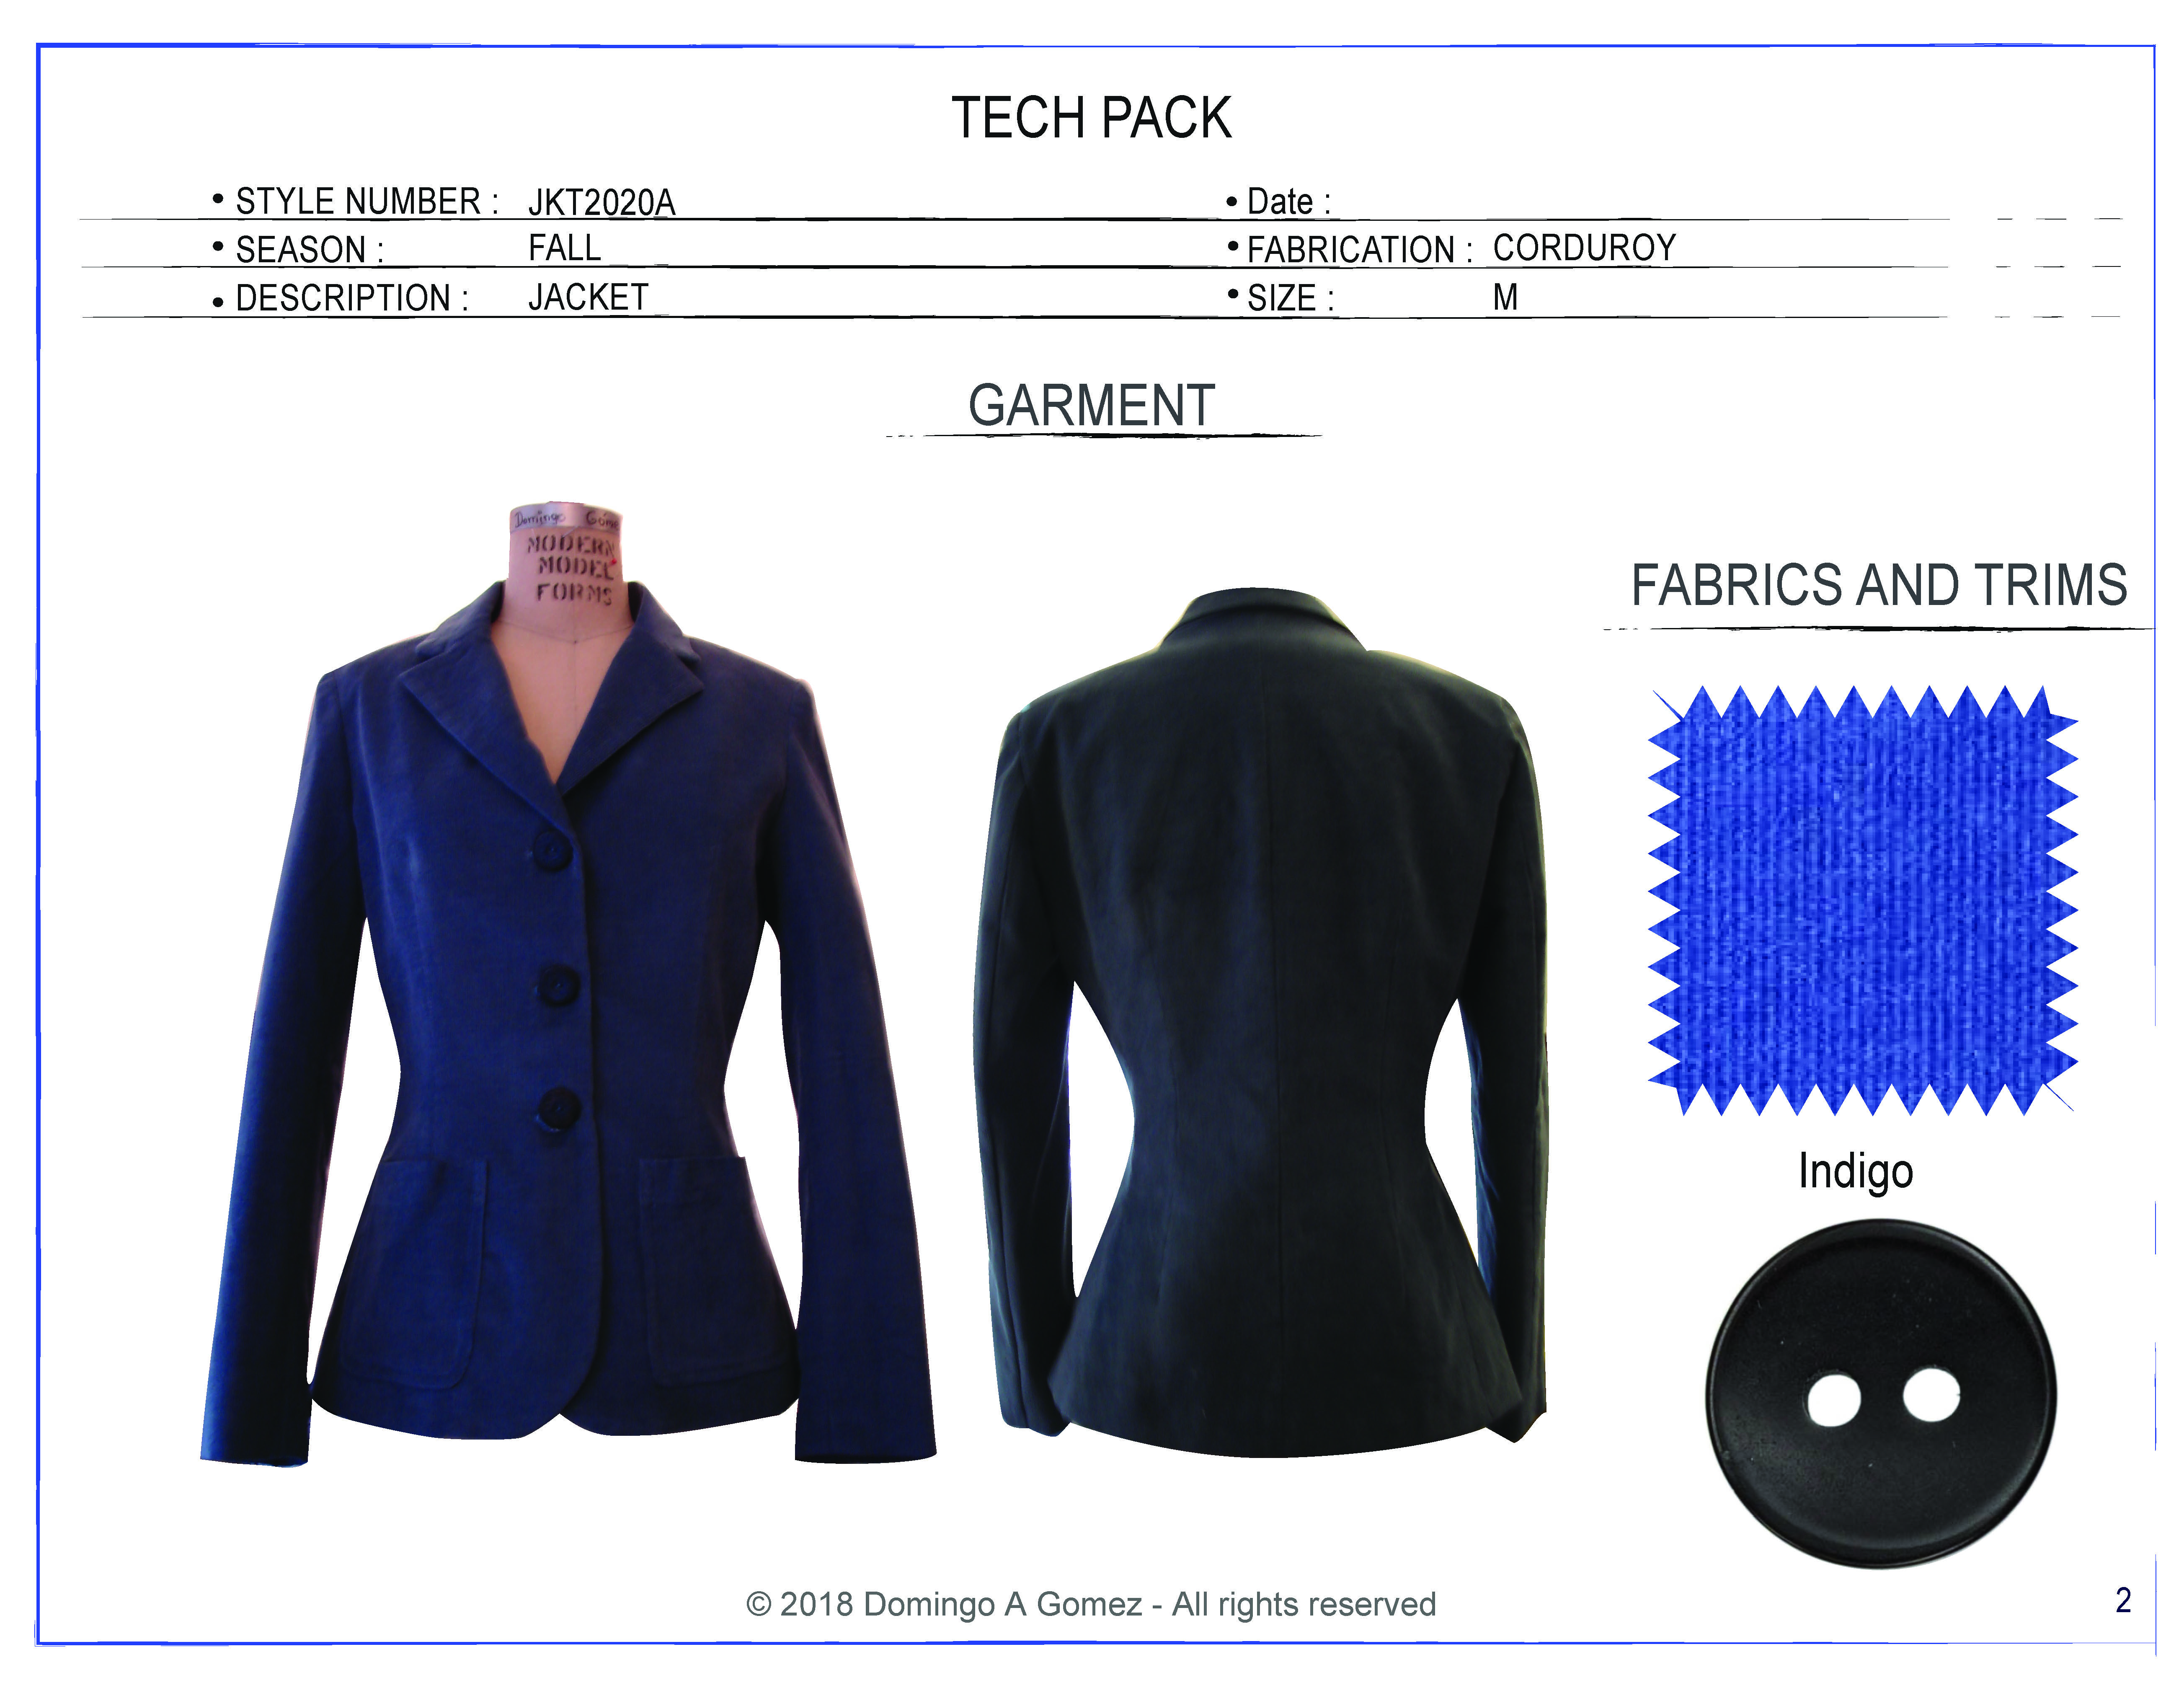 Jacket garment Domingo Gomez Tech Pack 2020_1_Page_2